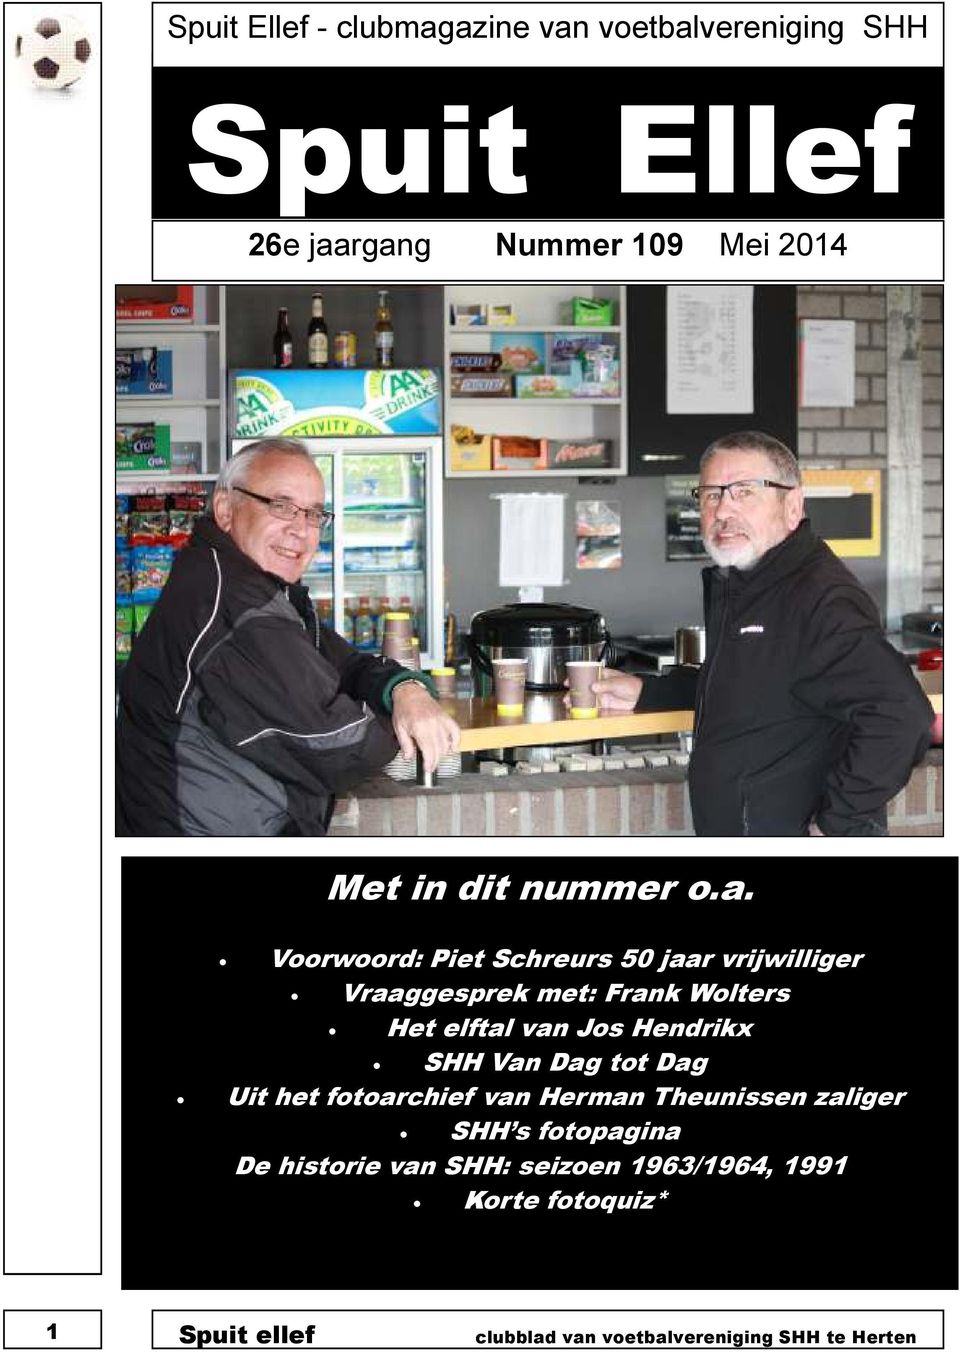 Voorwoord: Piet Schreurs 50 jaar vrijwilliger Vraaggesprek met: Frank Wolters Het elftal van Jos Hendrikx